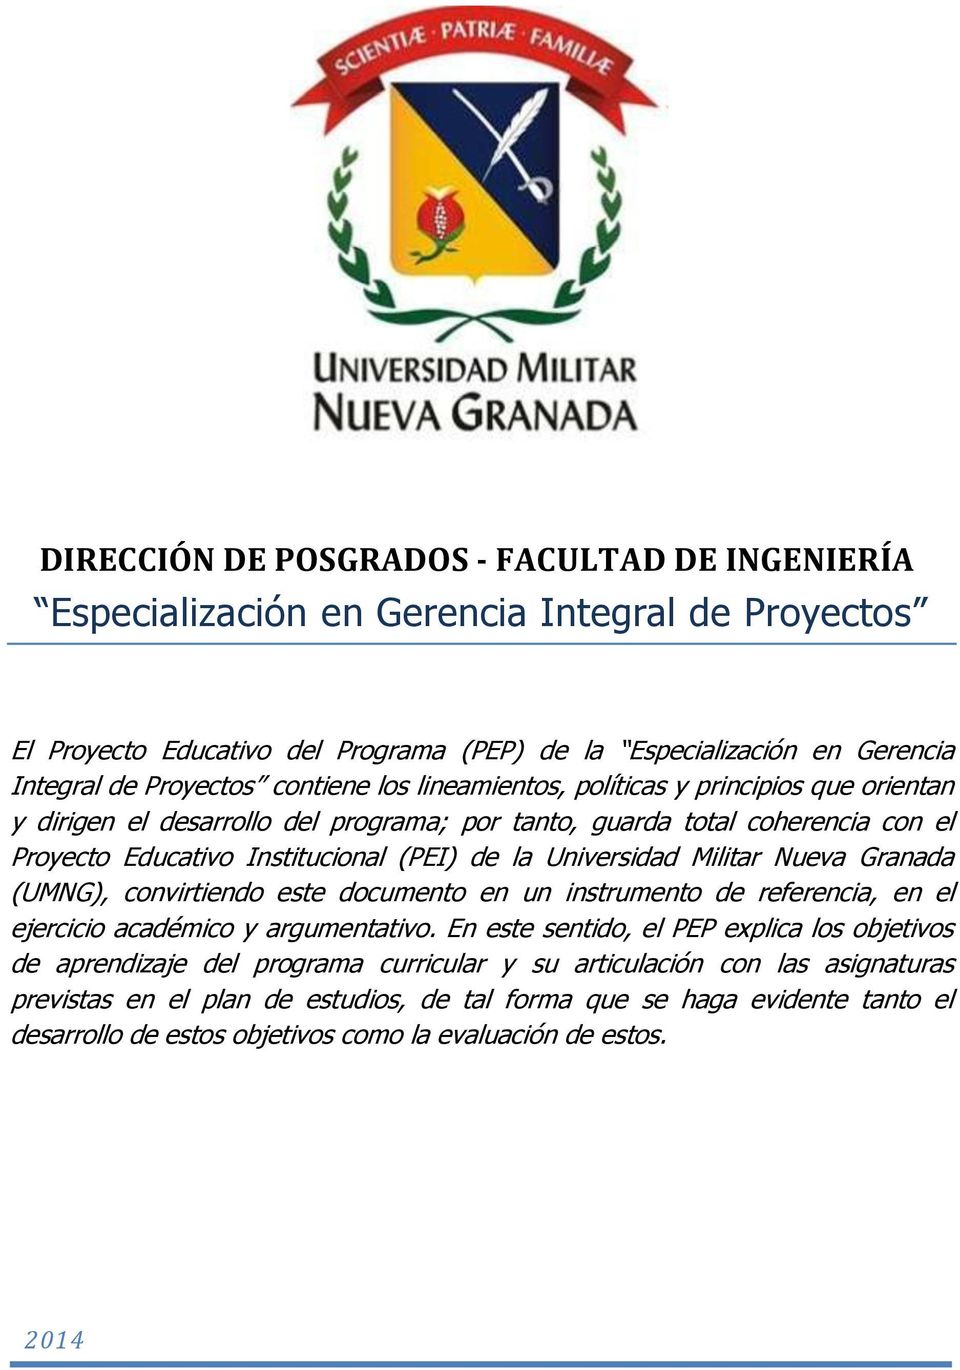 Universidad Militar Nueva Granada (UMNG), convirtiendo este documento en un instrumento de referencia, en el ejercicio académico y argumentativo.